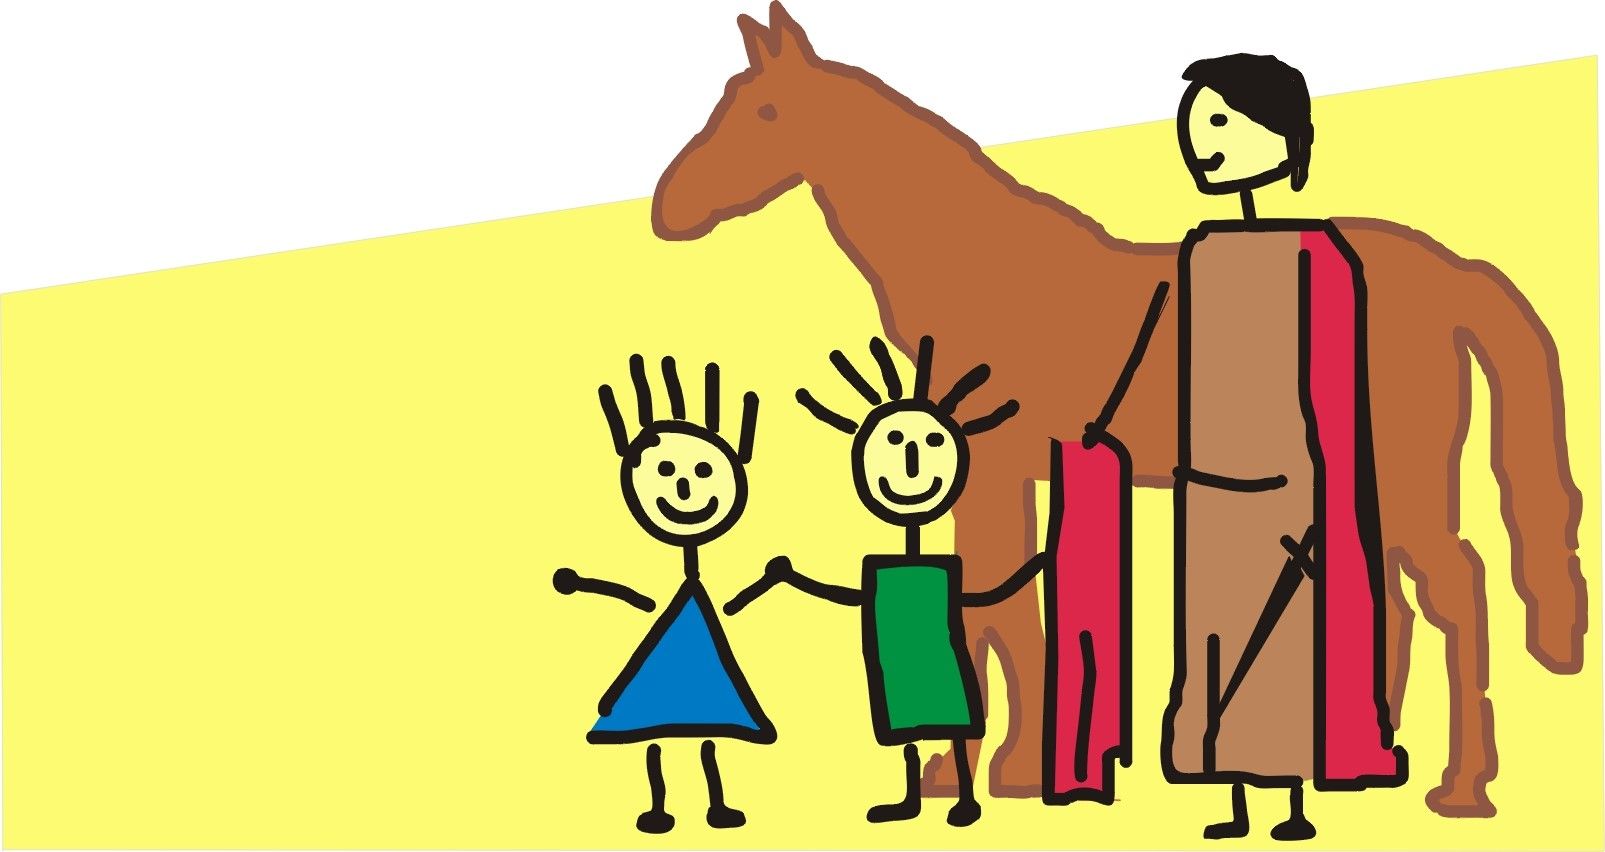 Gezeichnetes Bild: St. Martin vor einem braunen Pferd. Er trägt einen roten Mantel. Ein Teil des roten Mantels reicht er einem der beiden Kinder, die neben ihm stehen.